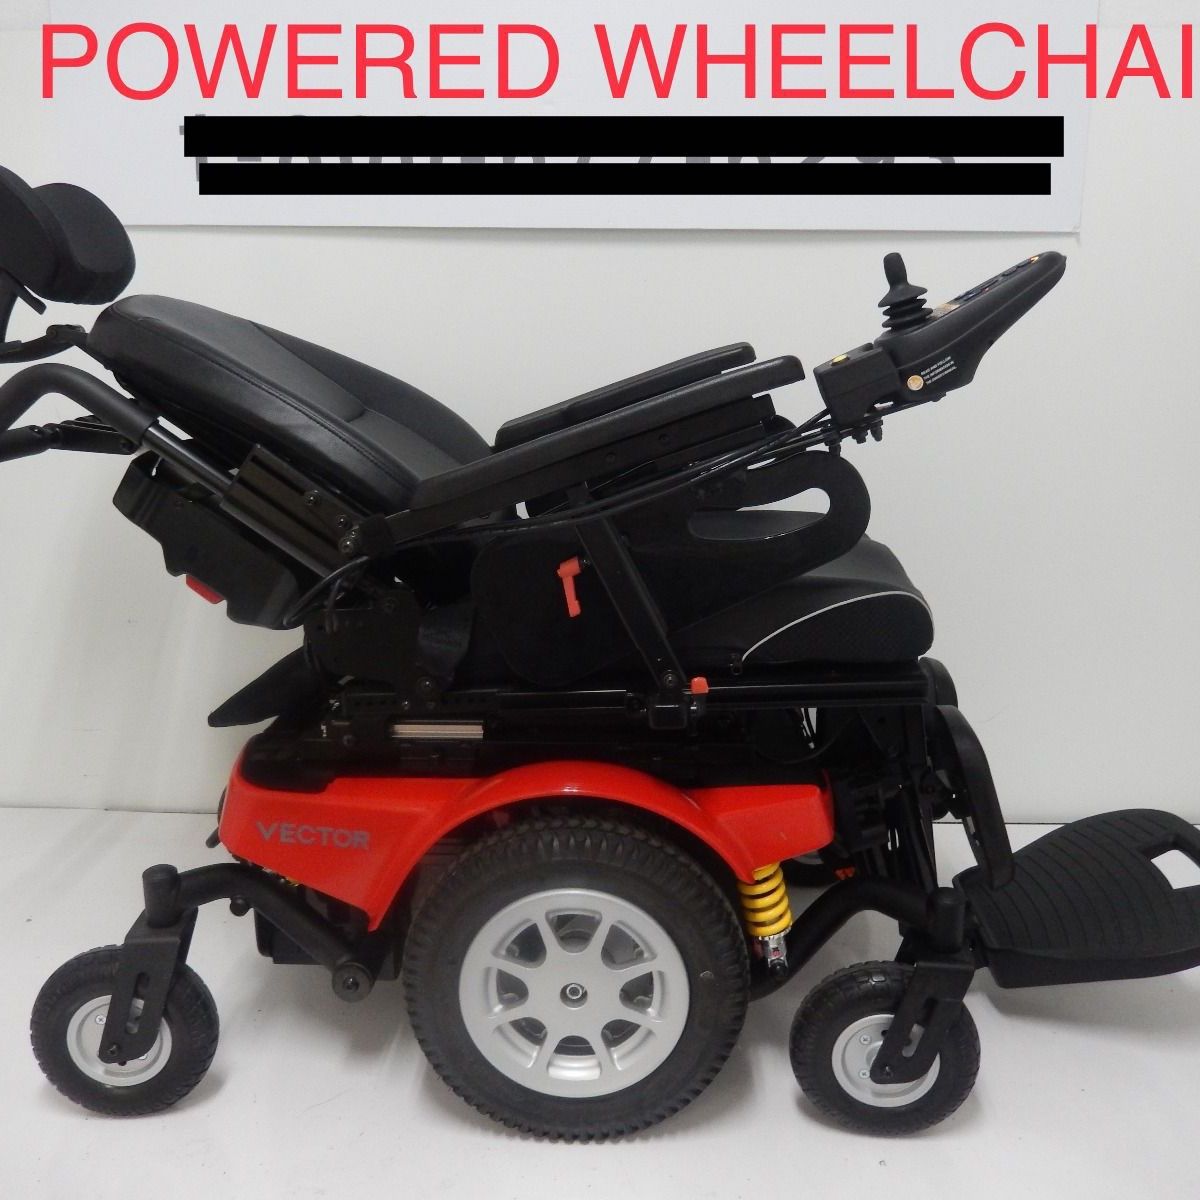 VECTOR   P323   Power wheelchair 